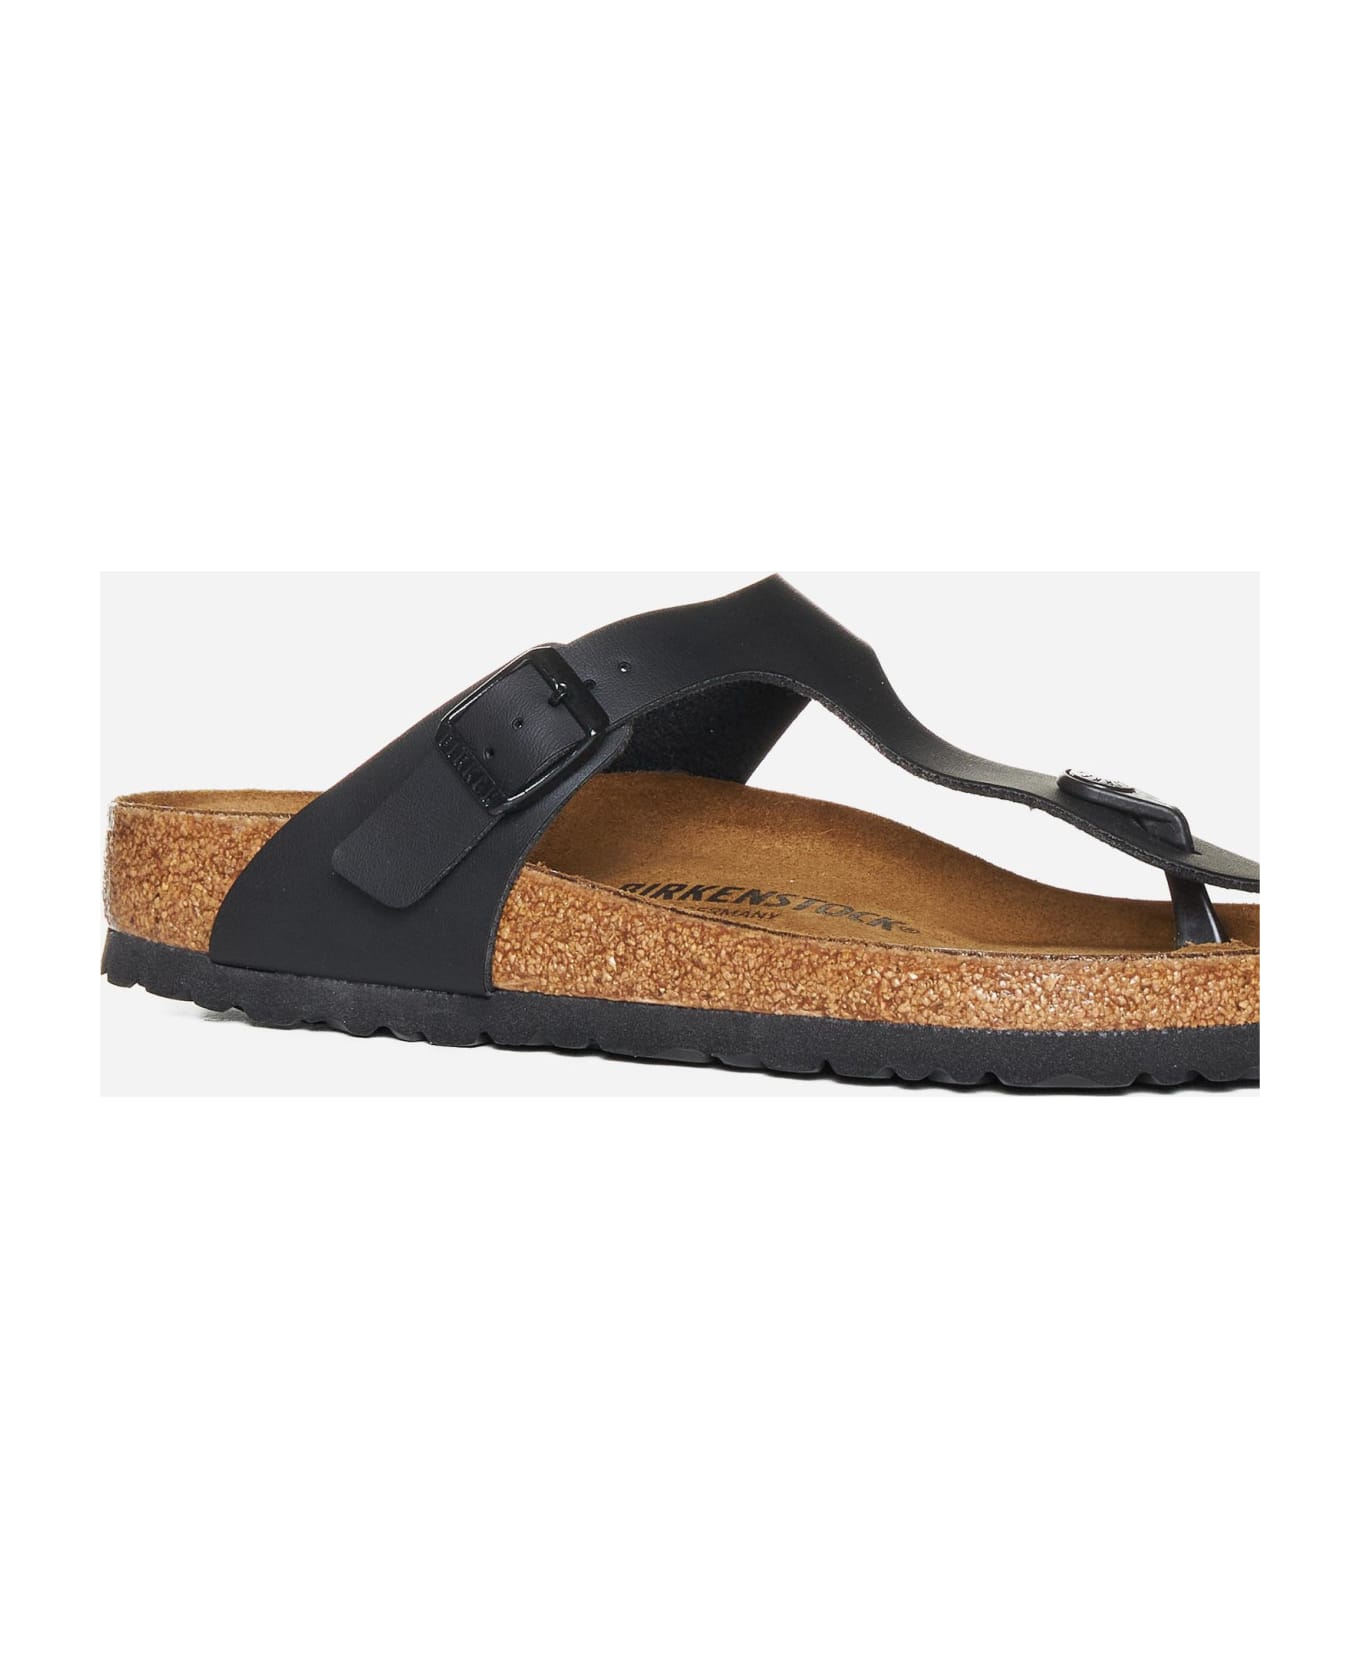 Birkenstock Gizeh Leather Sandals - Black